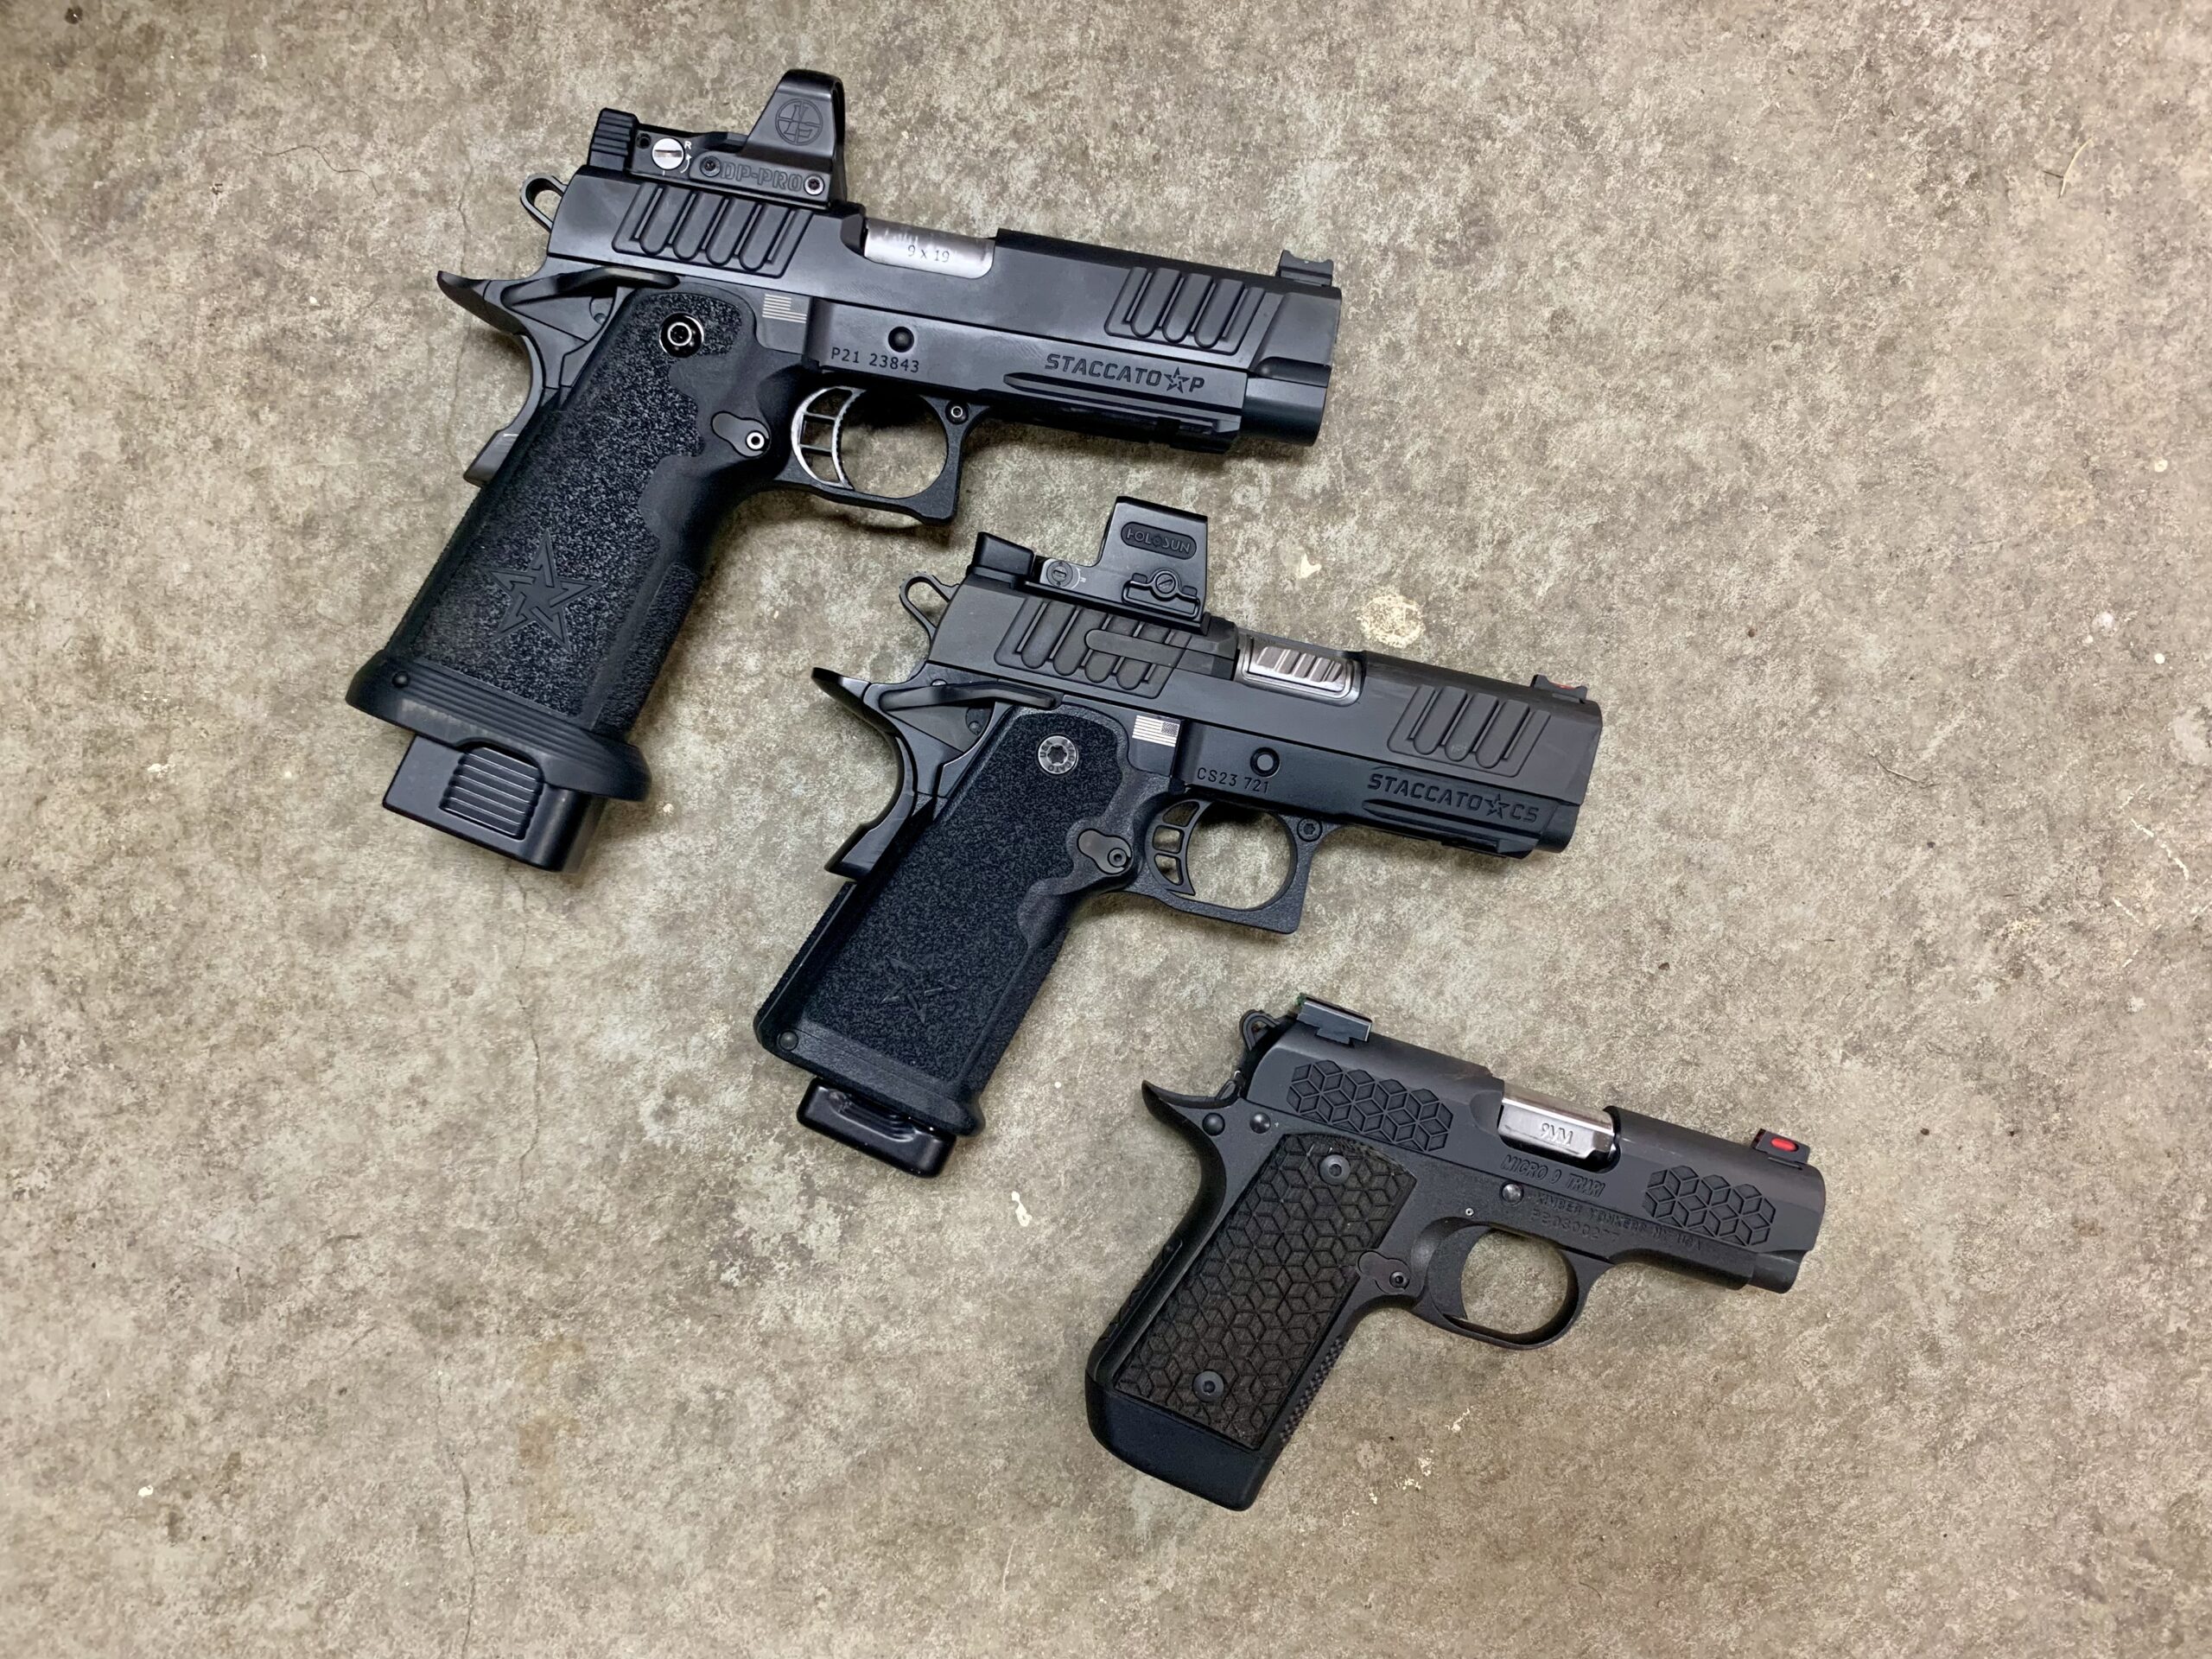 3 sizes of pistols